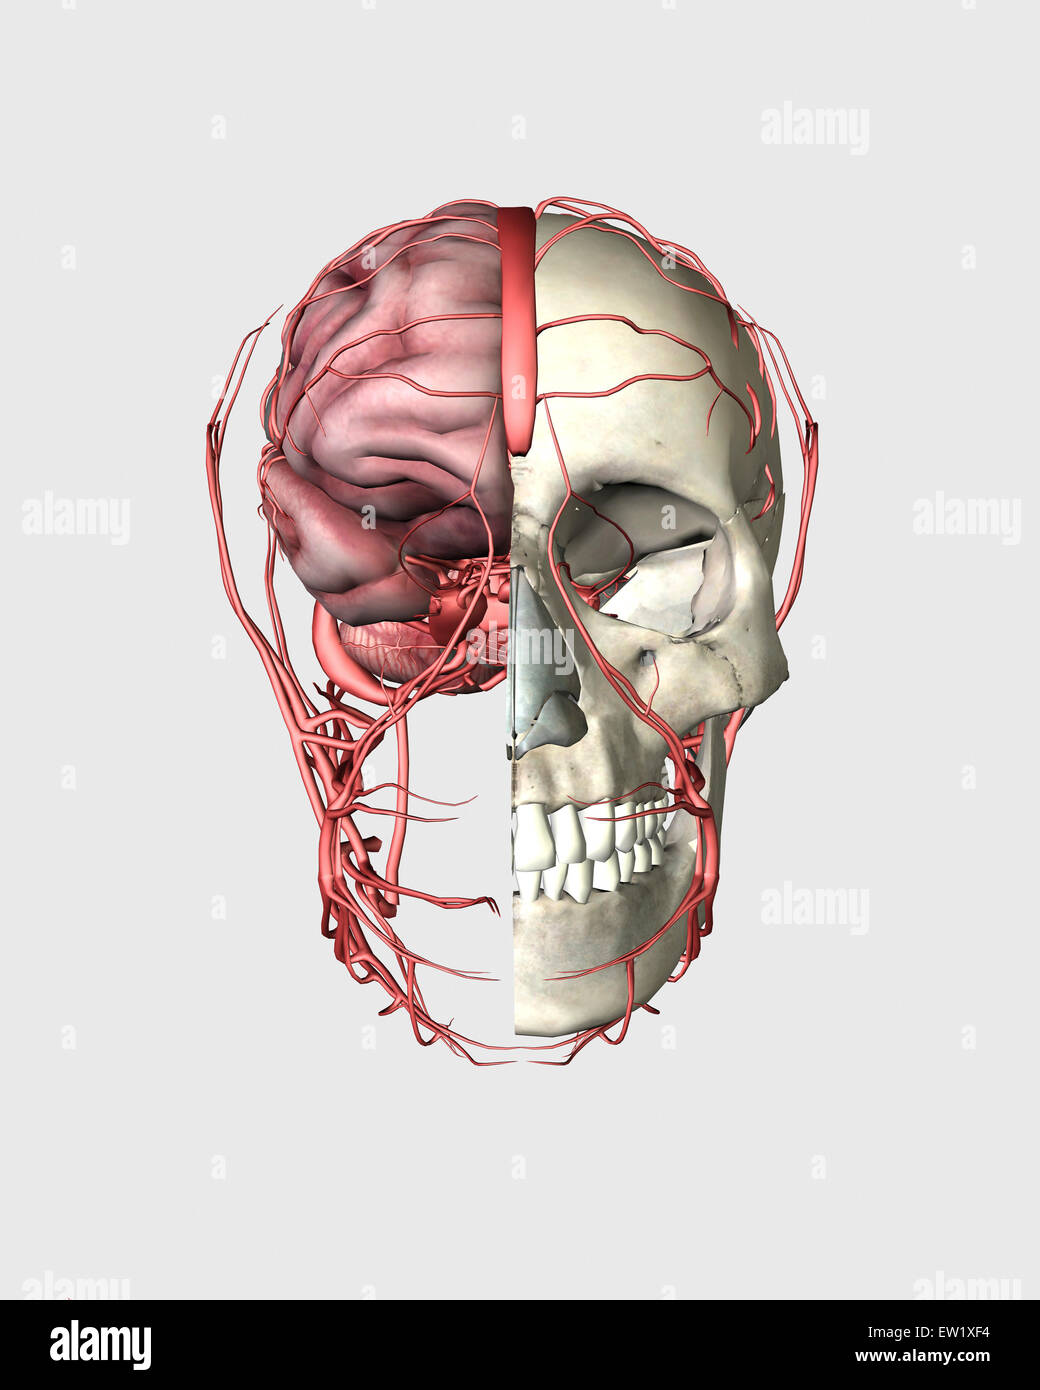 Vista Transectional di cranio umano che mostra la metà del cervello con vene. Foto Stock